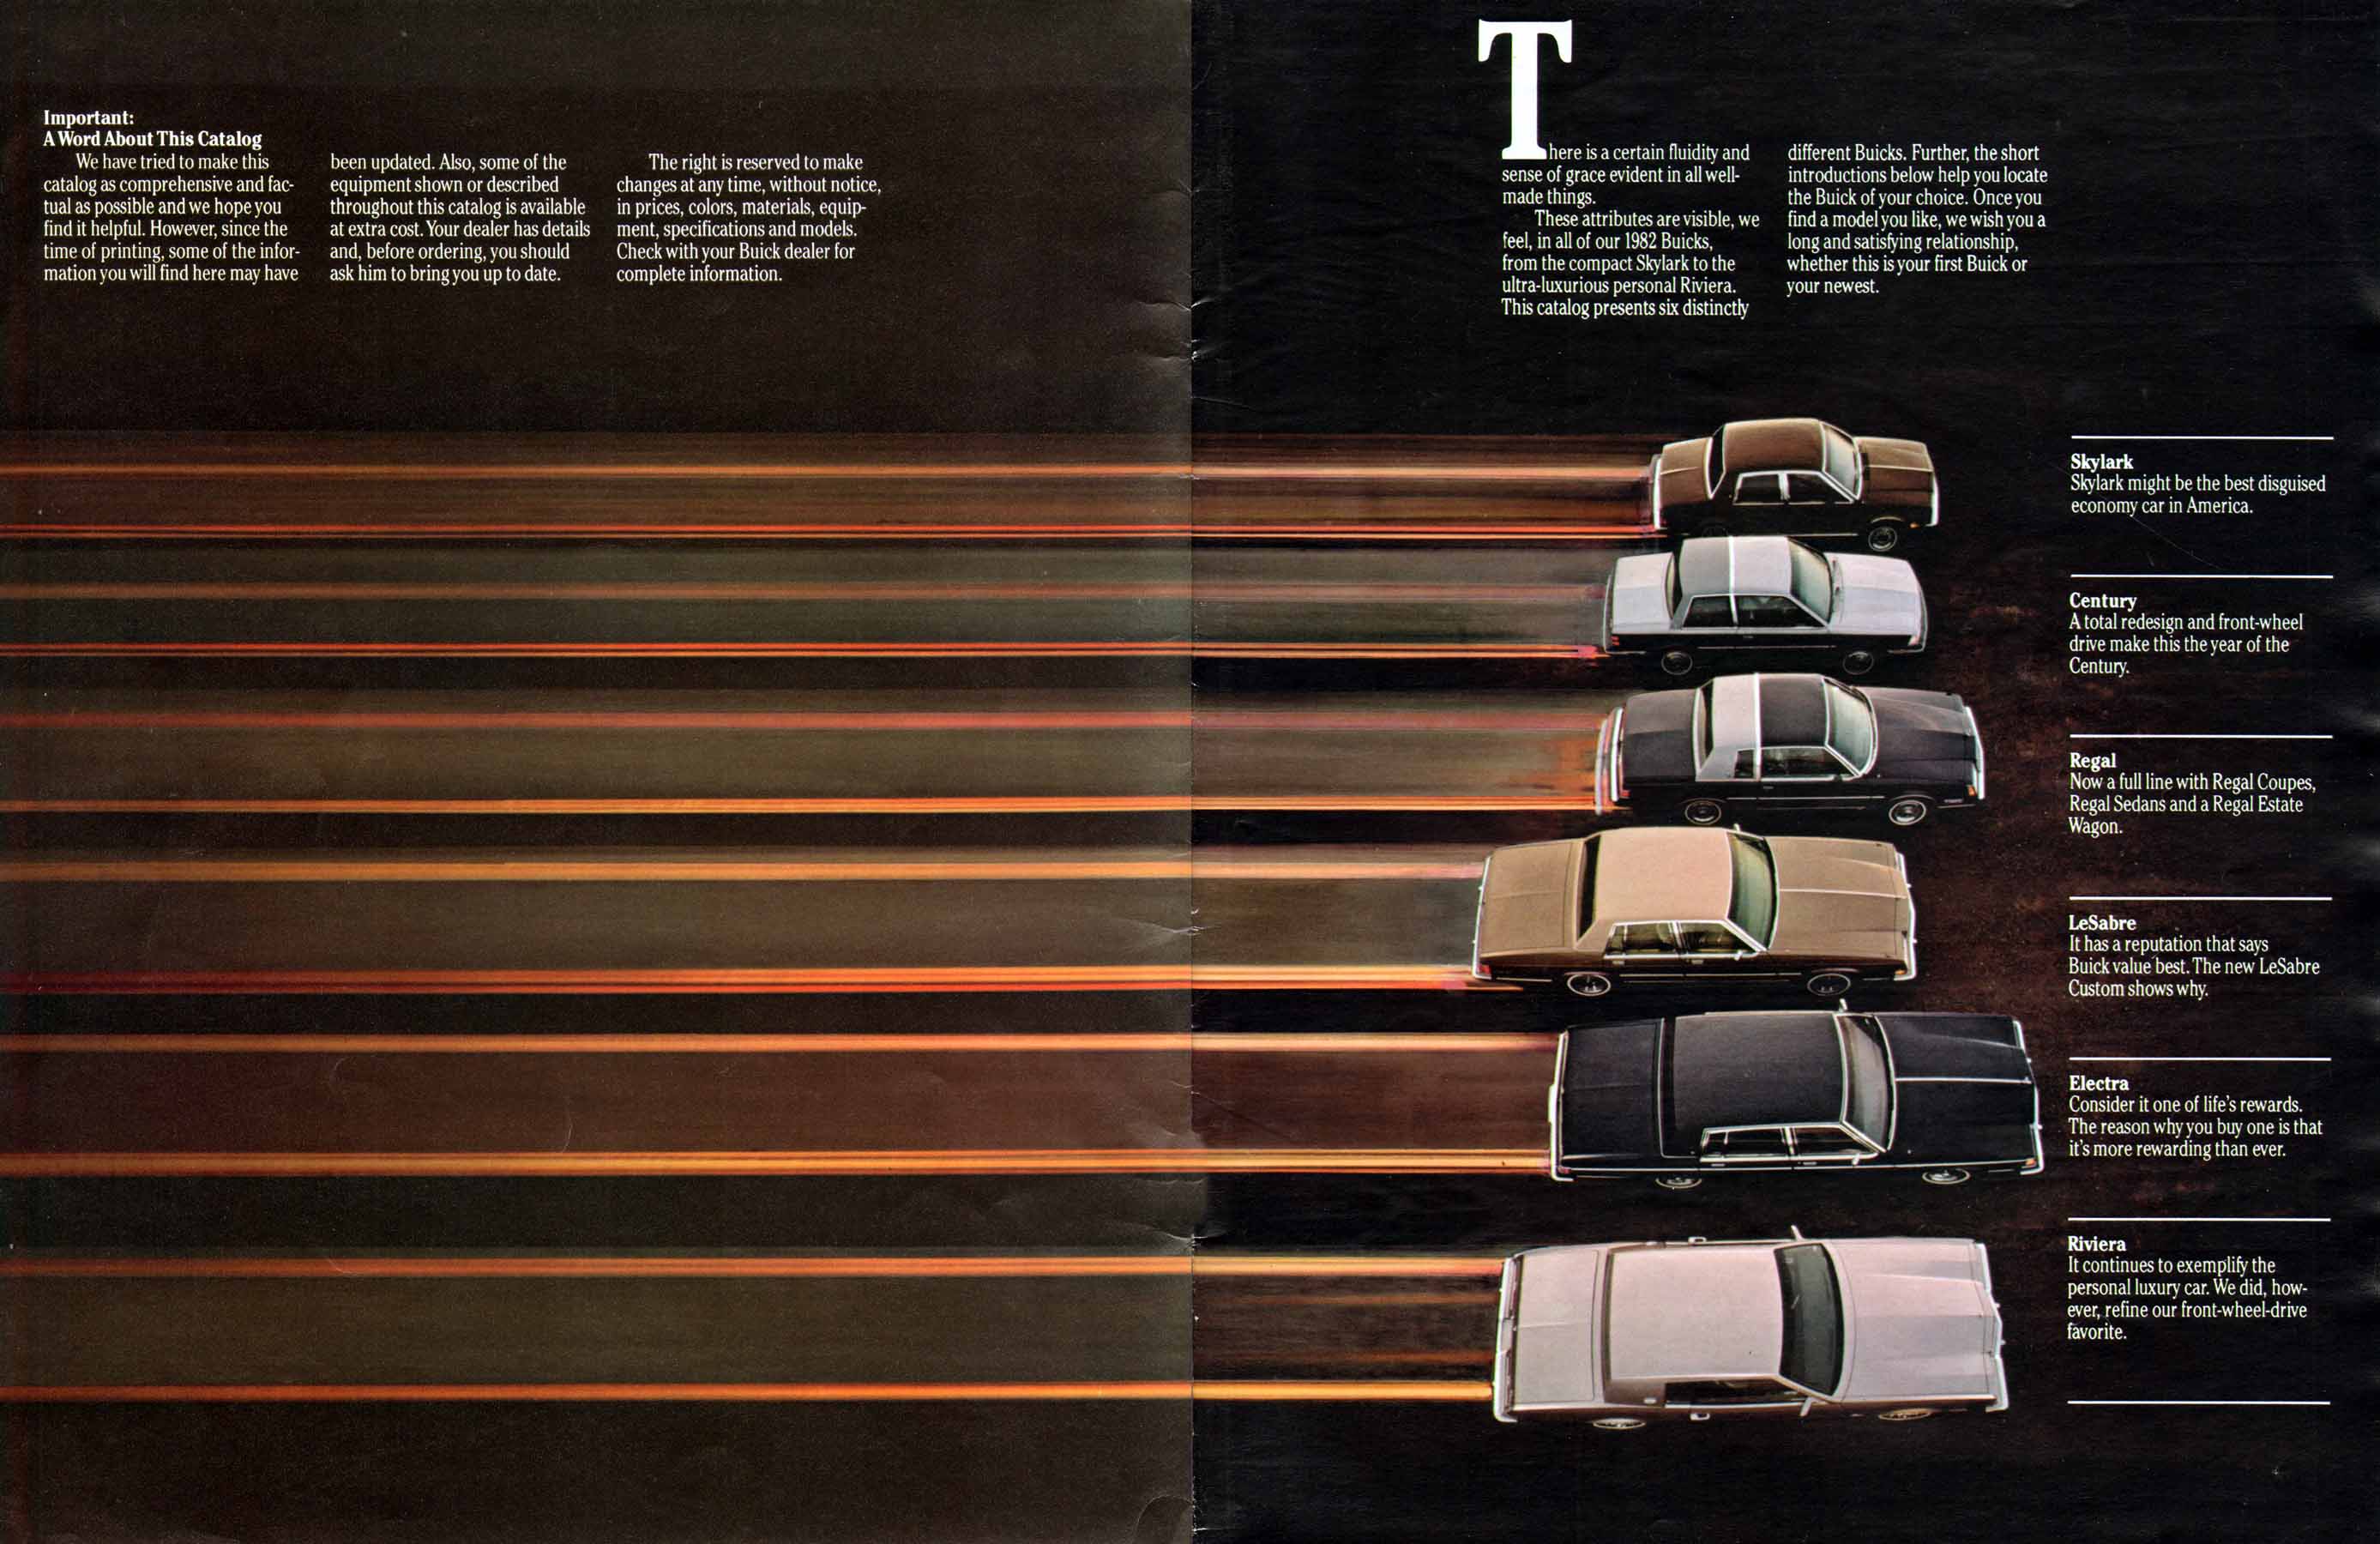 1982 Buick Full Line Prestige-02-03